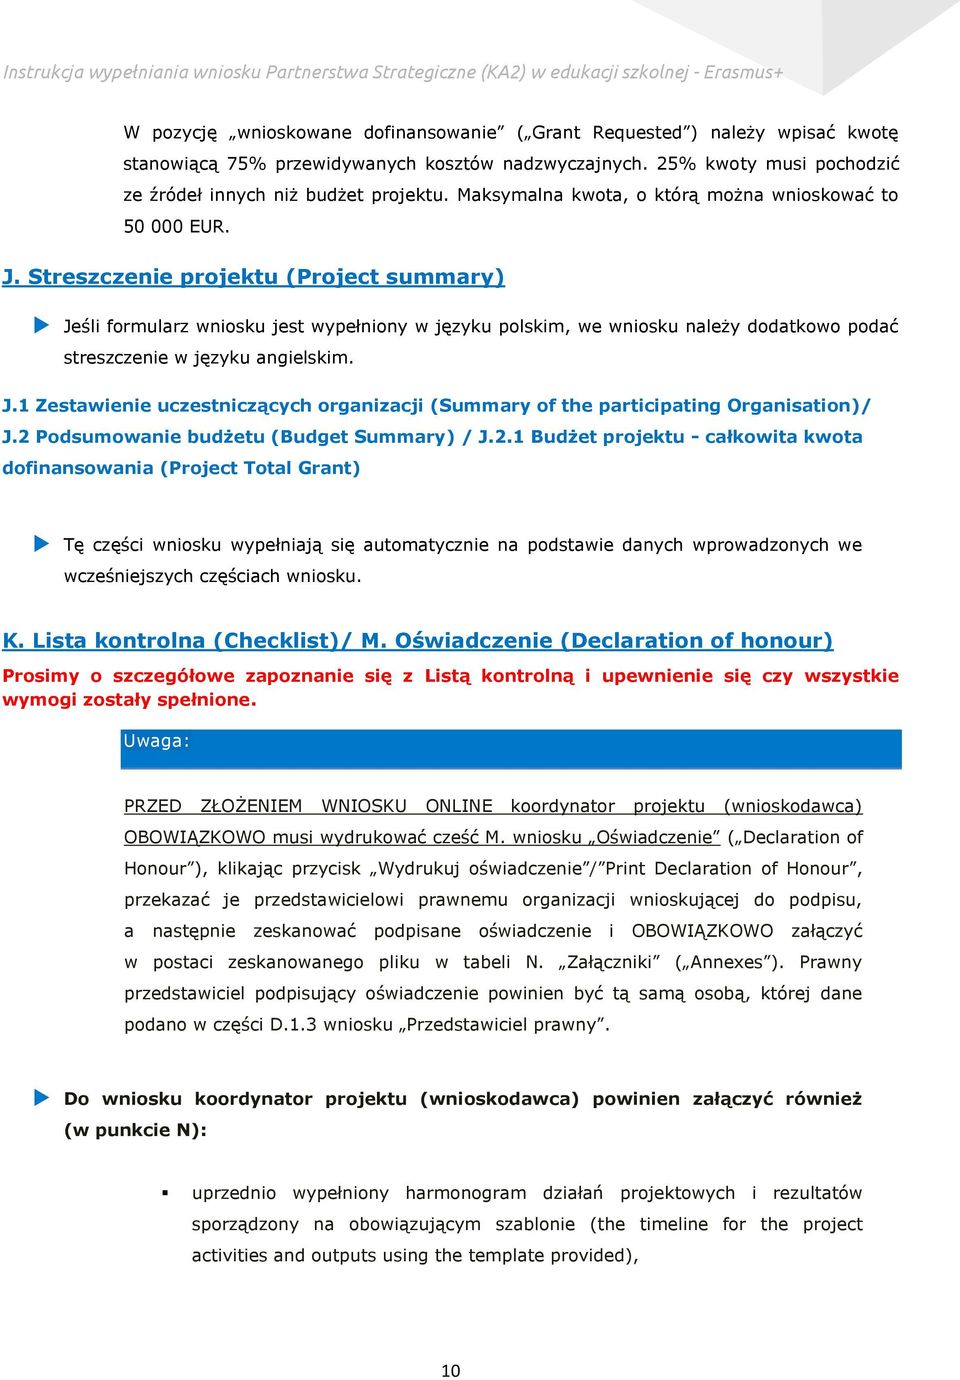 Streszczenie projektu (Project summary) Jeśli formularz wniosku jest wypełniony w języku polskim, we wniosku należy dodatkowo podać streszczenie w języku angielskim. J.1 Zestawienie uczestniczących organizacji (Summary of the participating Organisation)/ J.